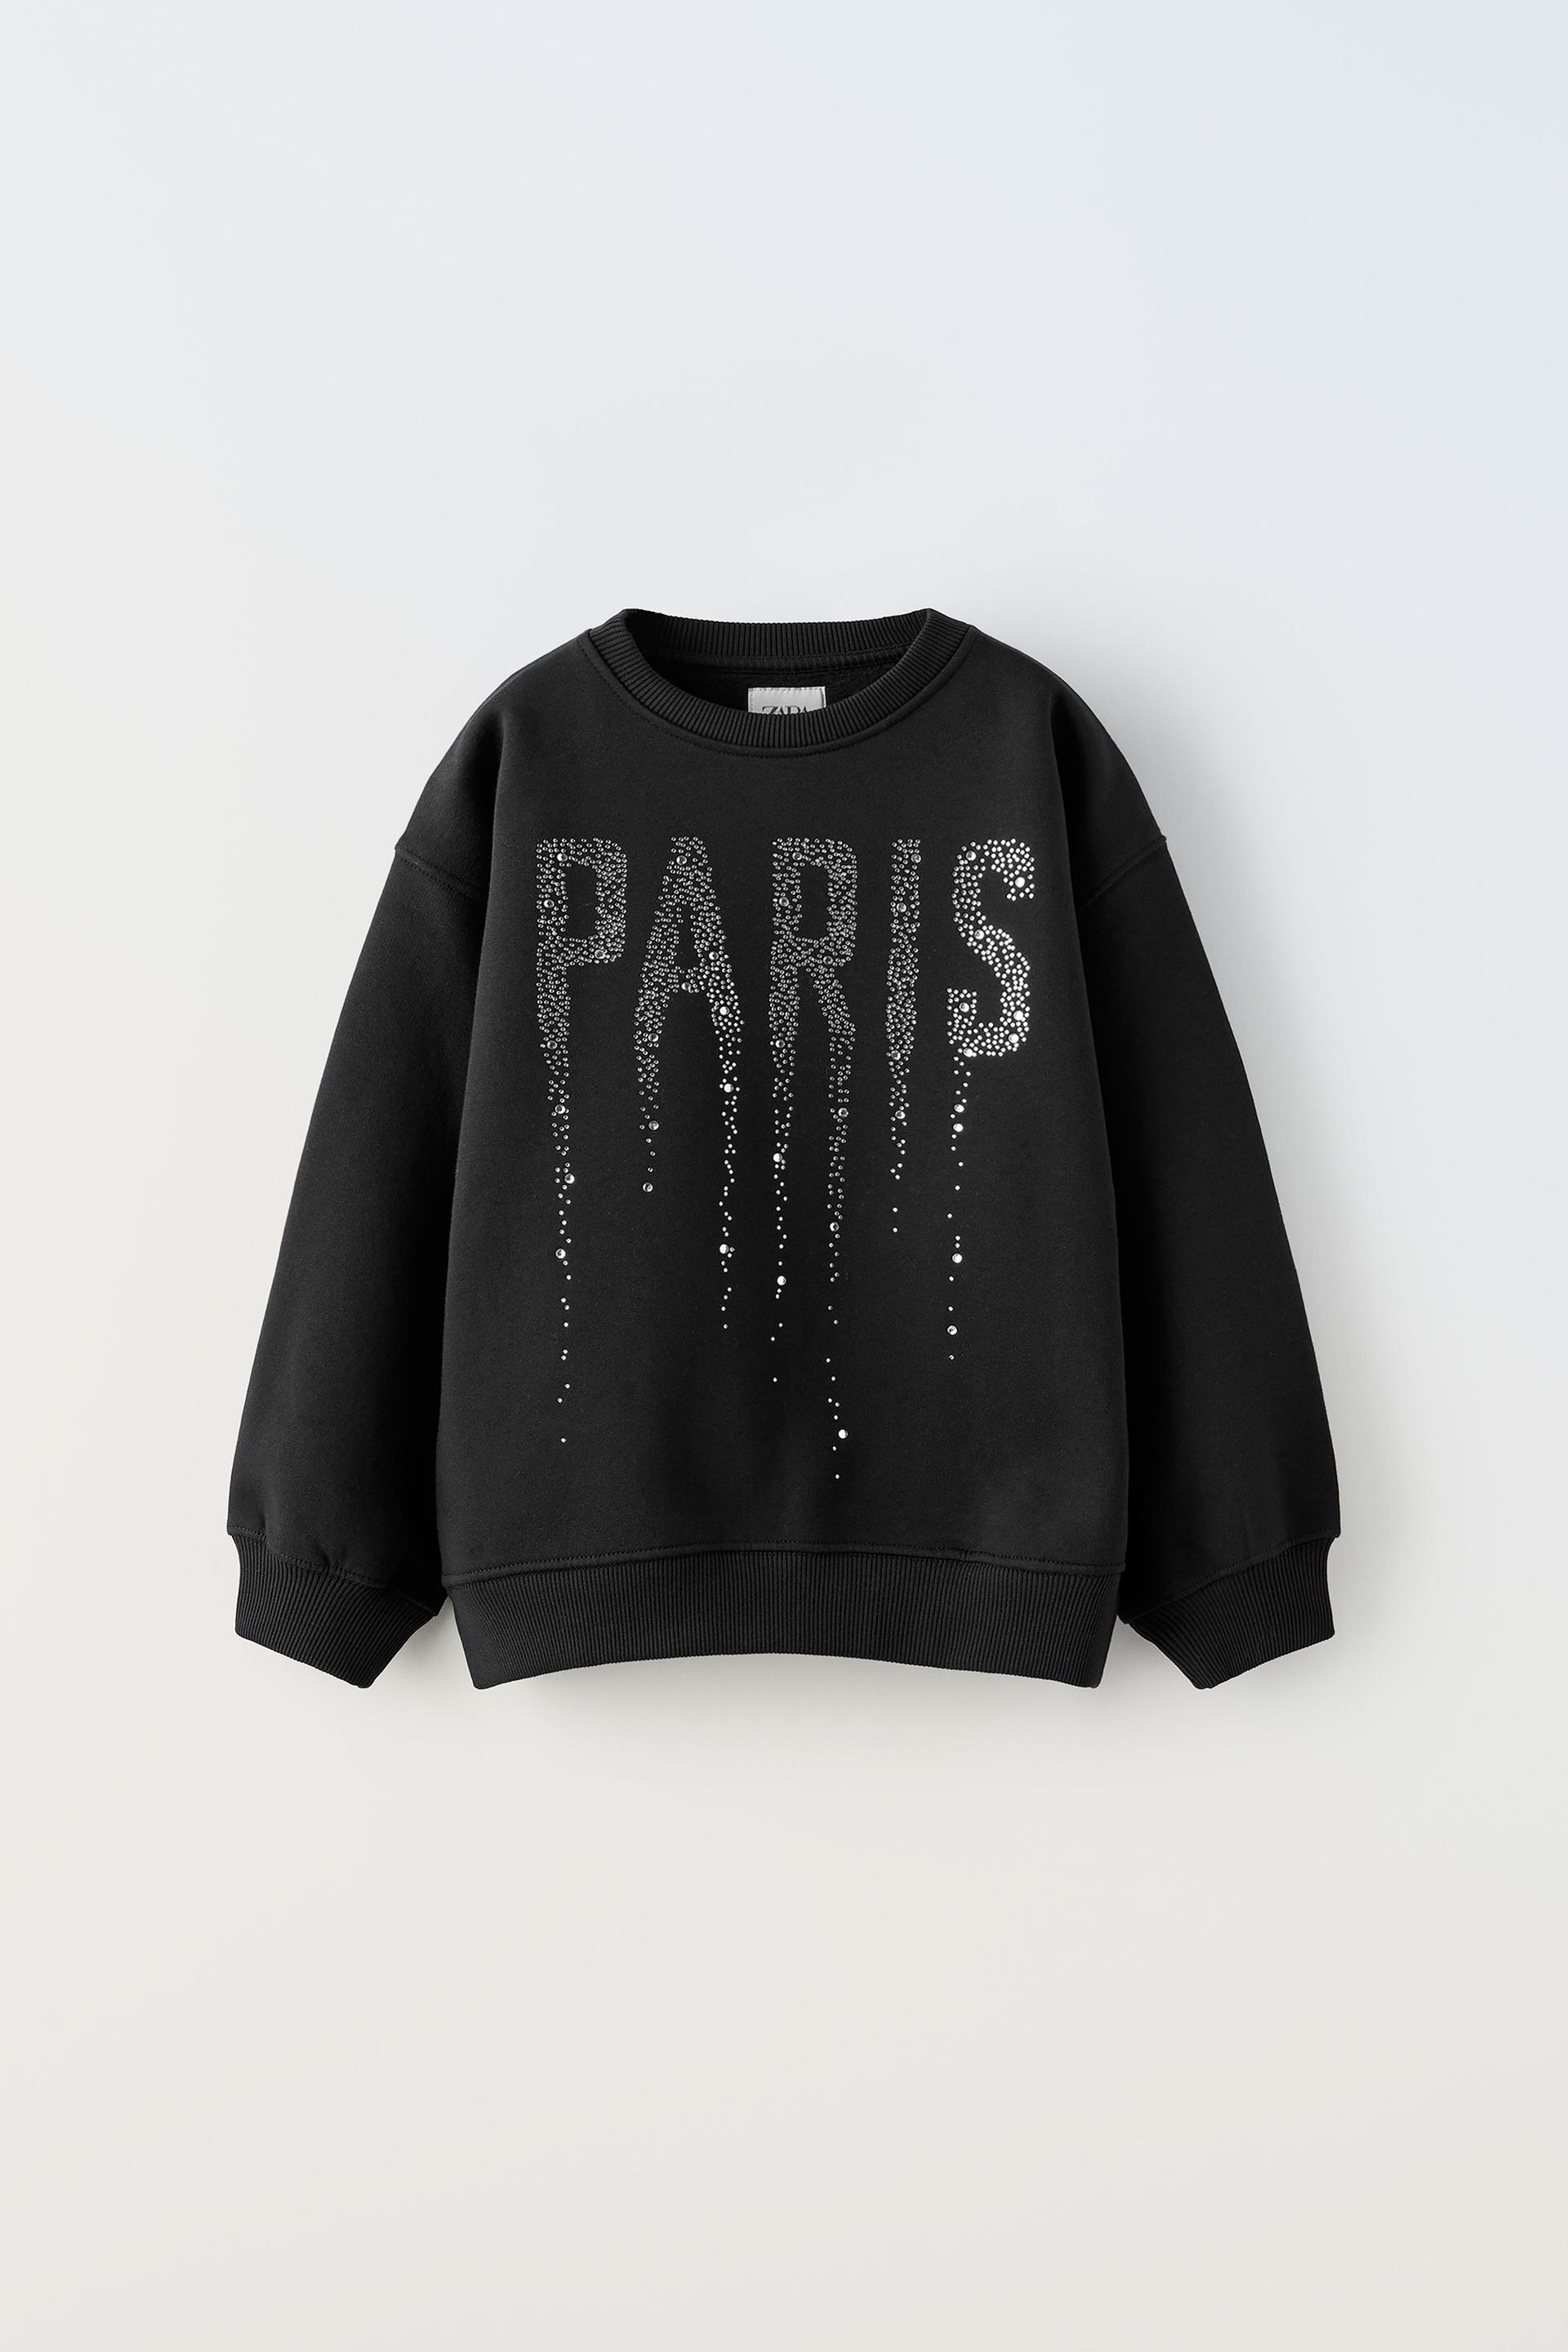 RHINESTONE “PARIS” SWEATSHIRT